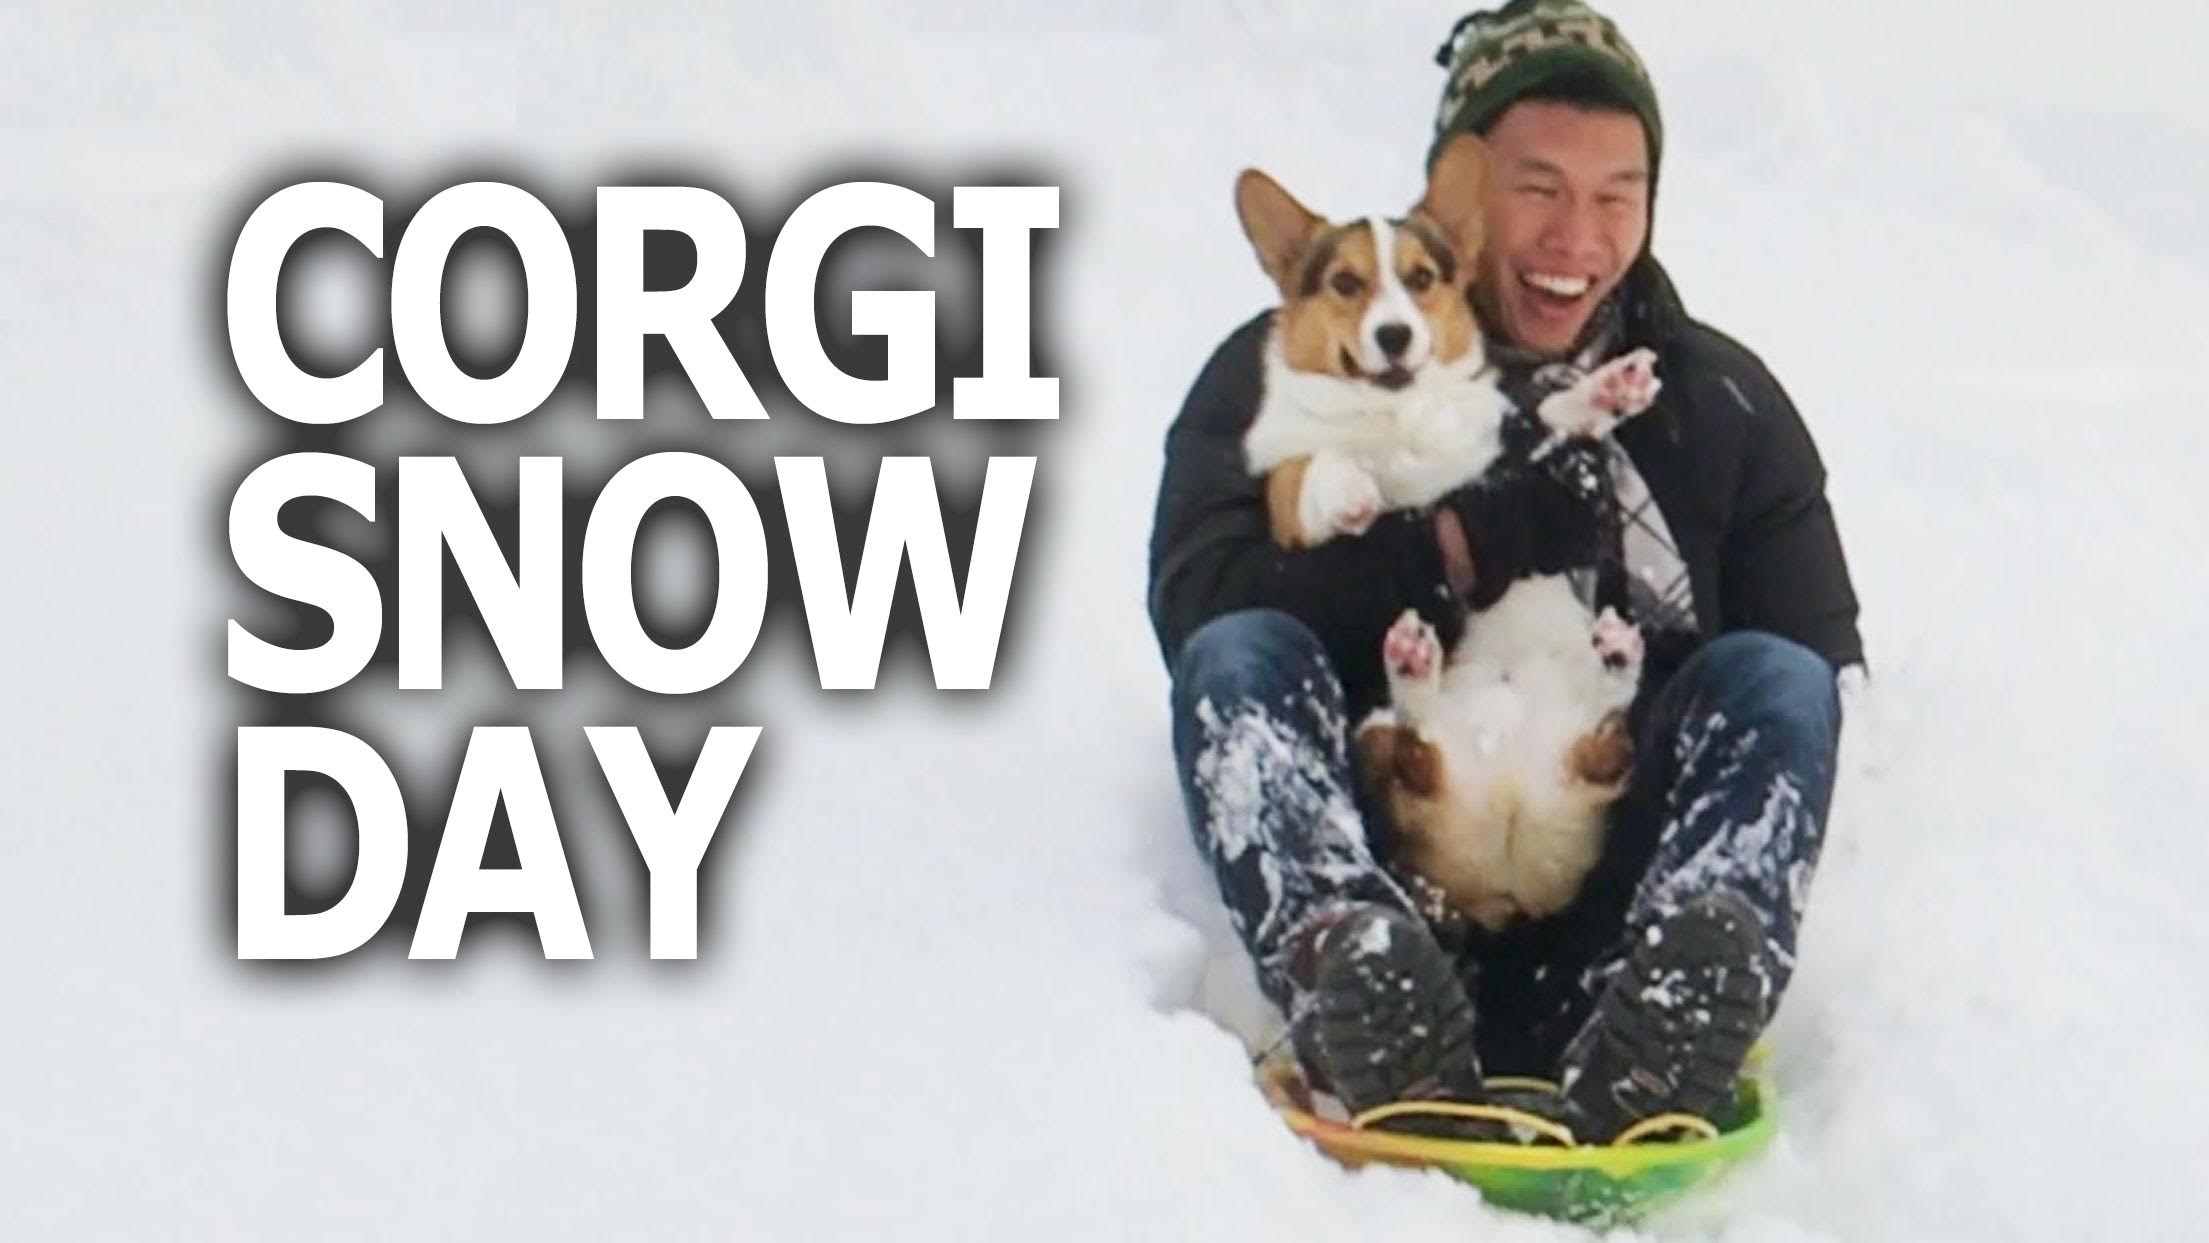 CORGI DOG SLEDS 1st TIME IN SNOW